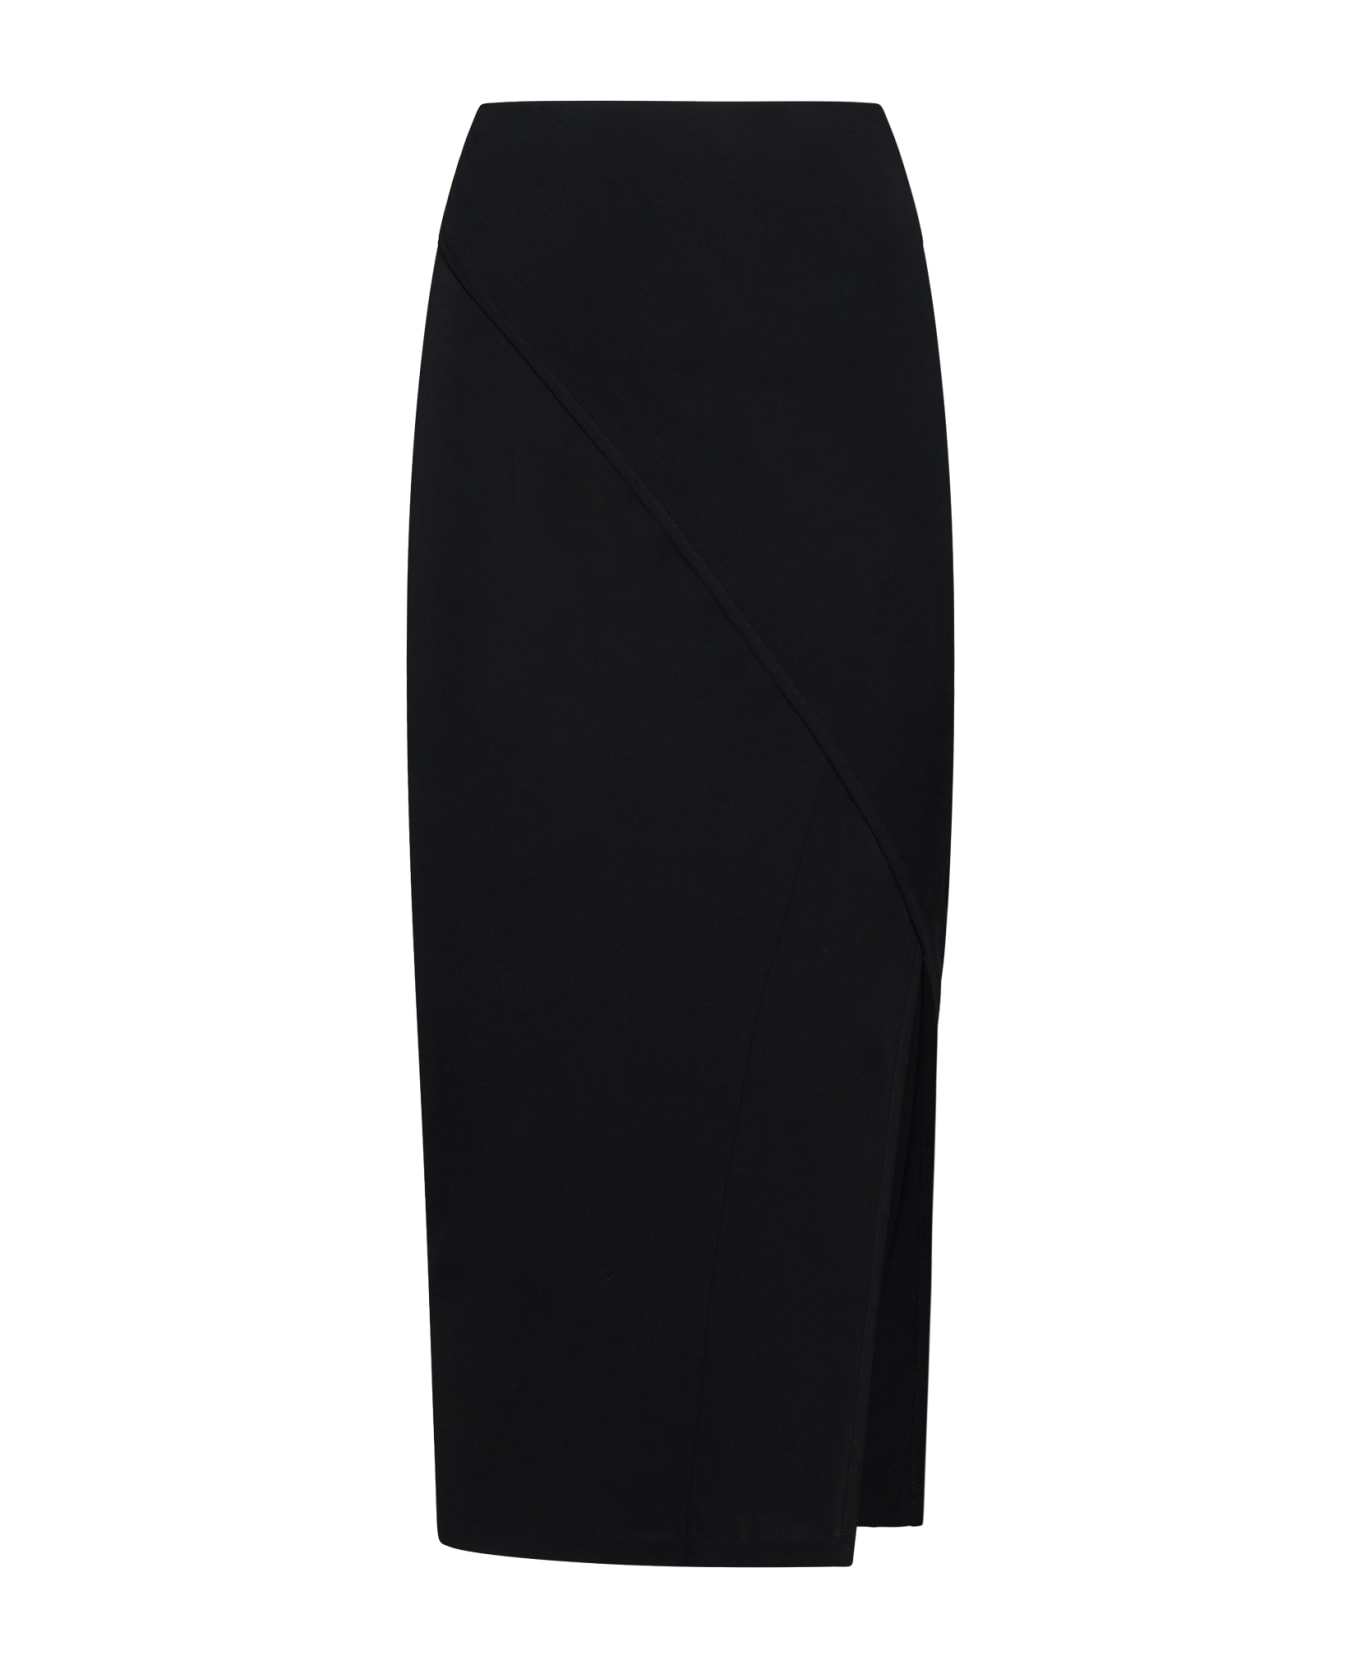 Diane Von Furstenberg Skirt - Black